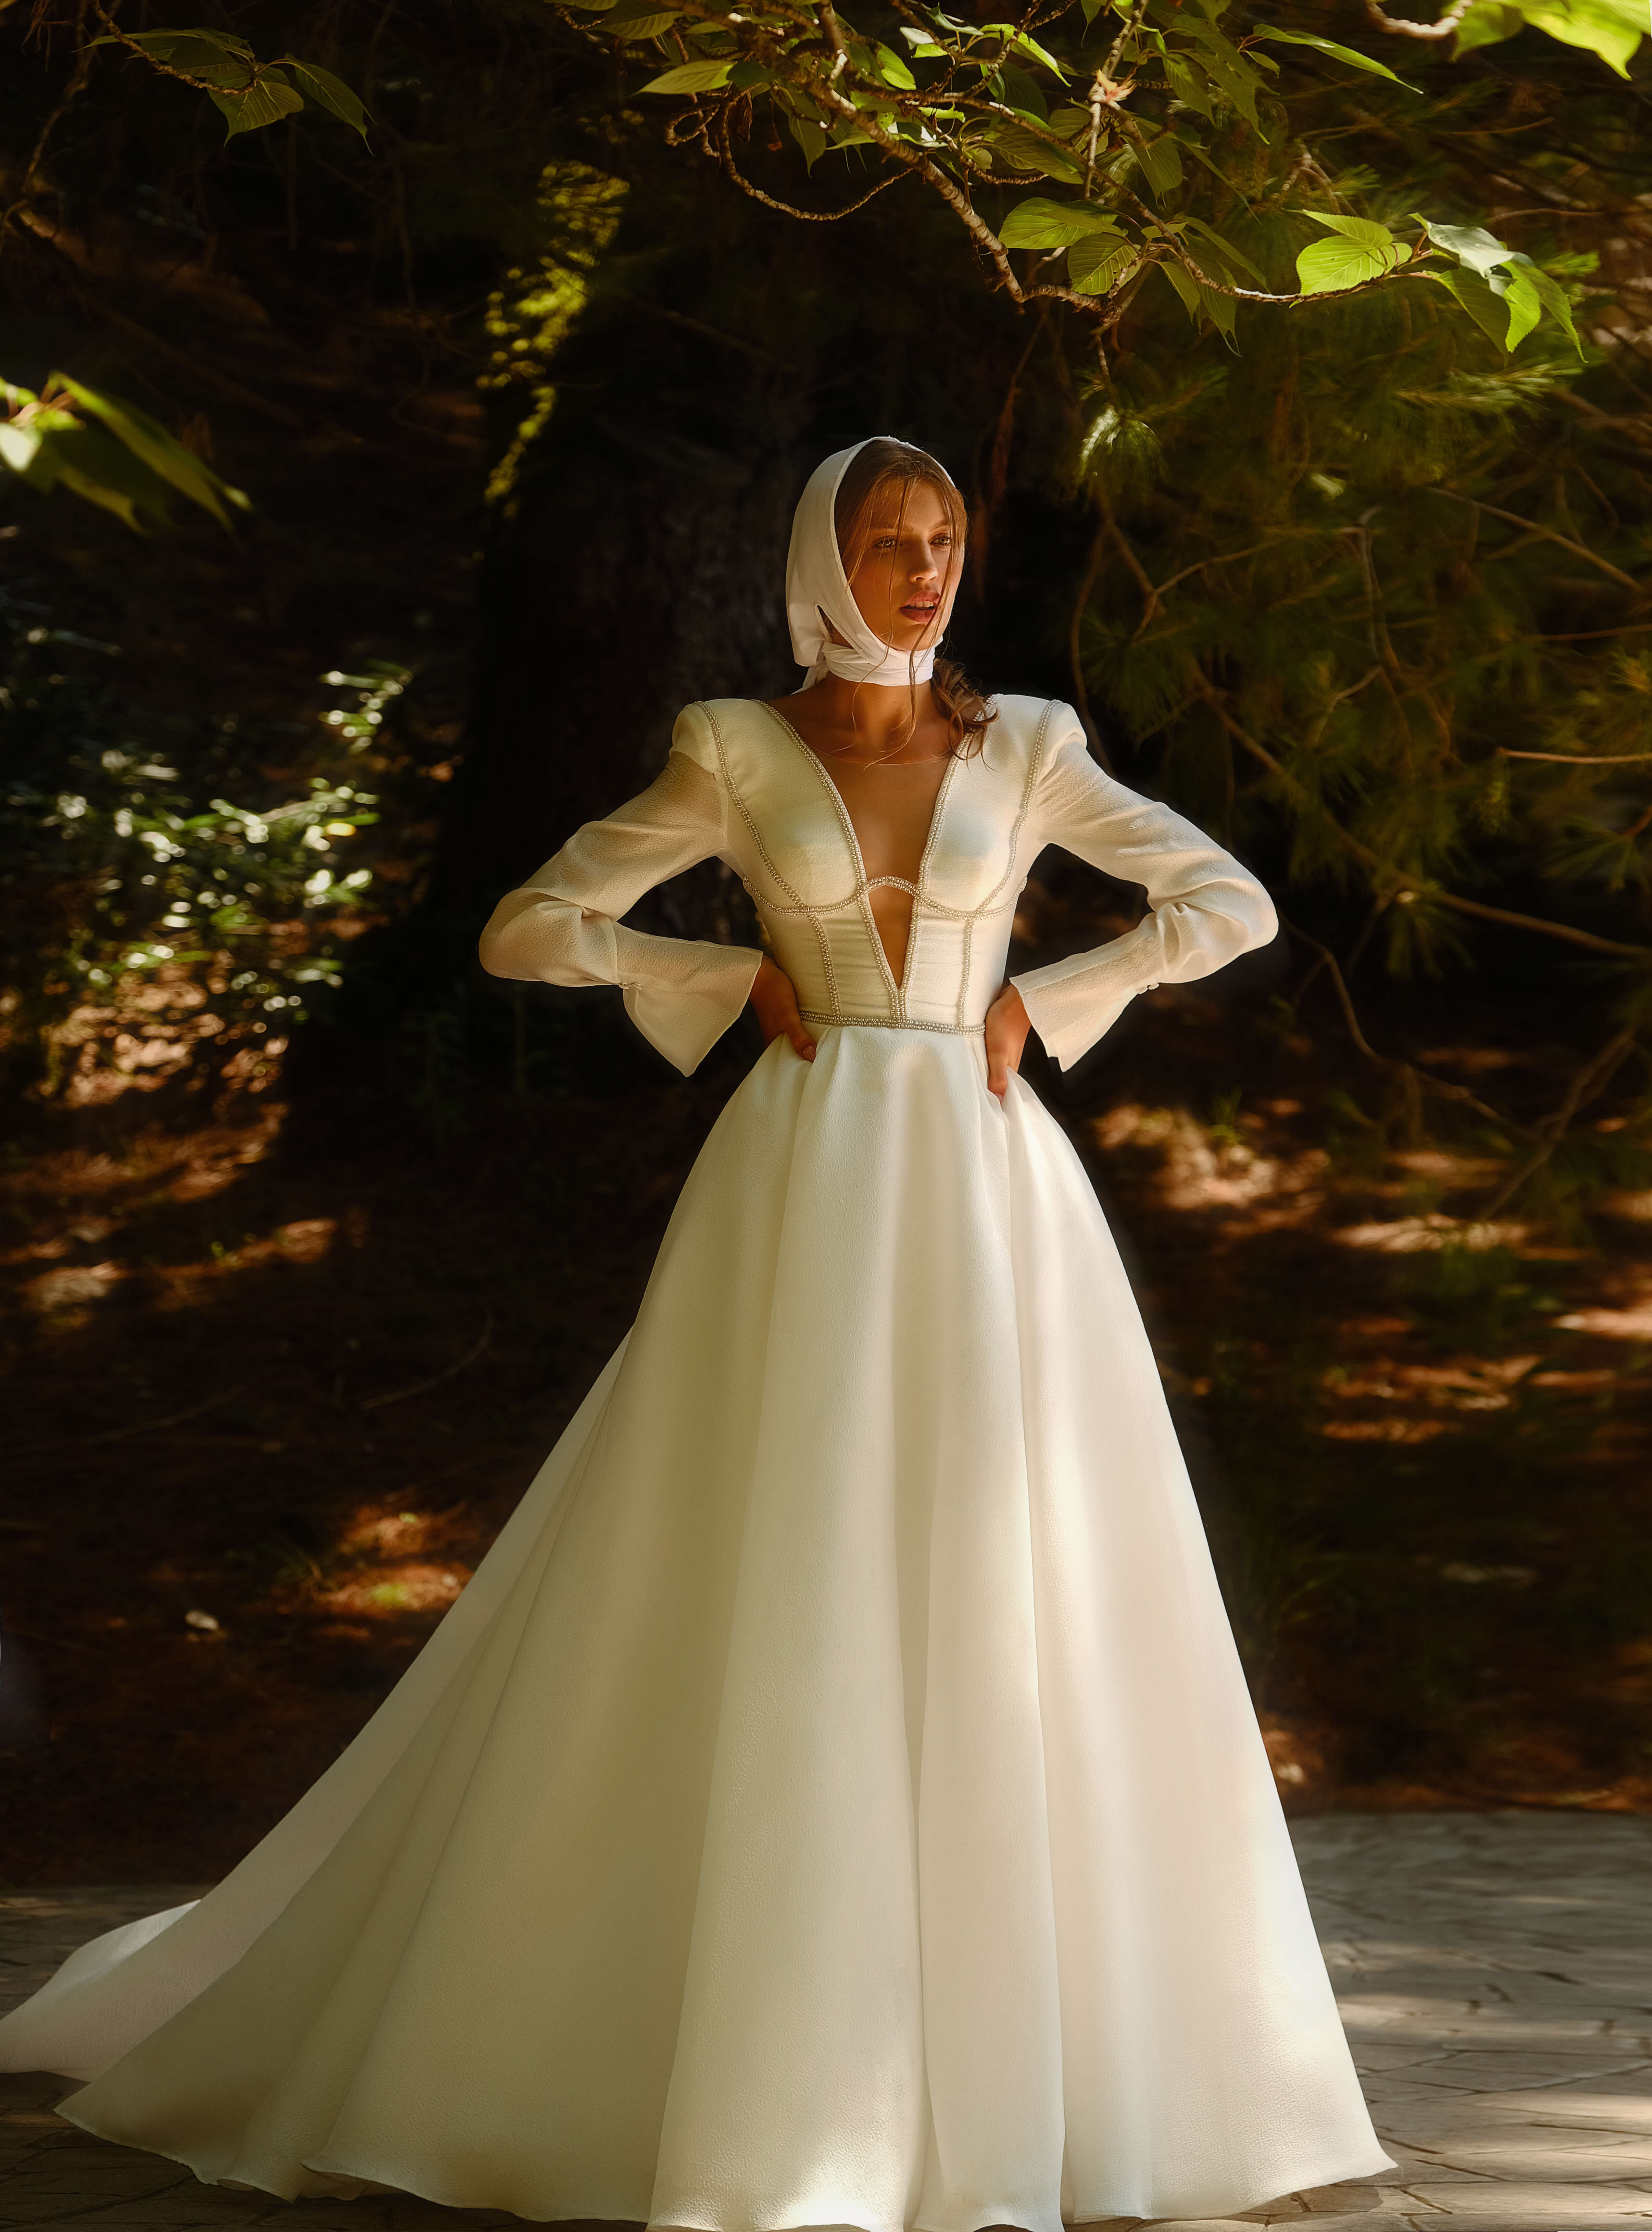 Купить свадебное платье «Берлин» Анже Этуаль из коллекции Влюбиться 2022 года в салоне «Мэри Трюфель»